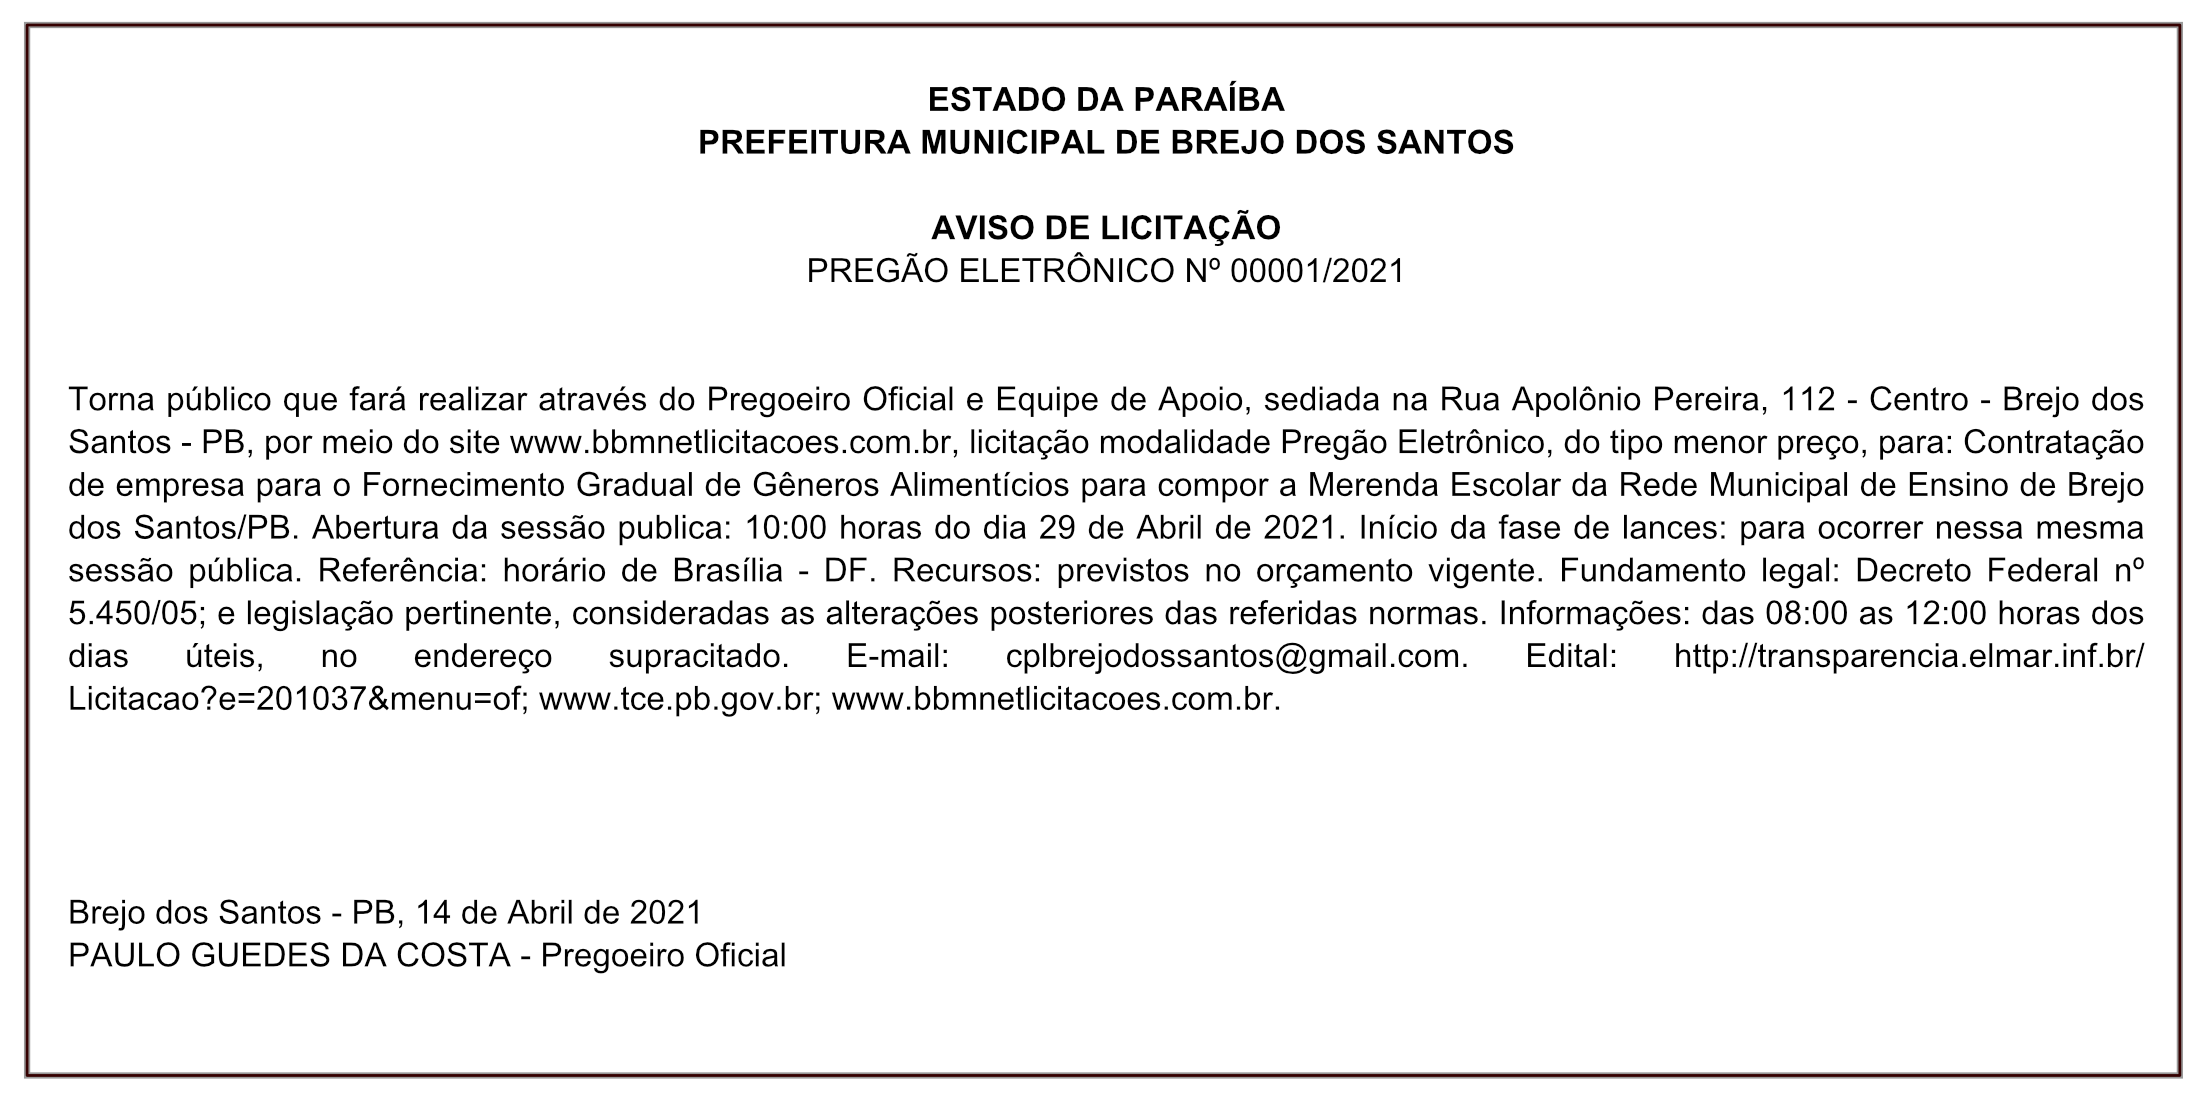 PREFEITURA MUNICIPAL DE BREJO DOS SANTOS – AVISO DE LICITAÇÃO – PREGÃO ELETRÔNICO Nº 00001/2021